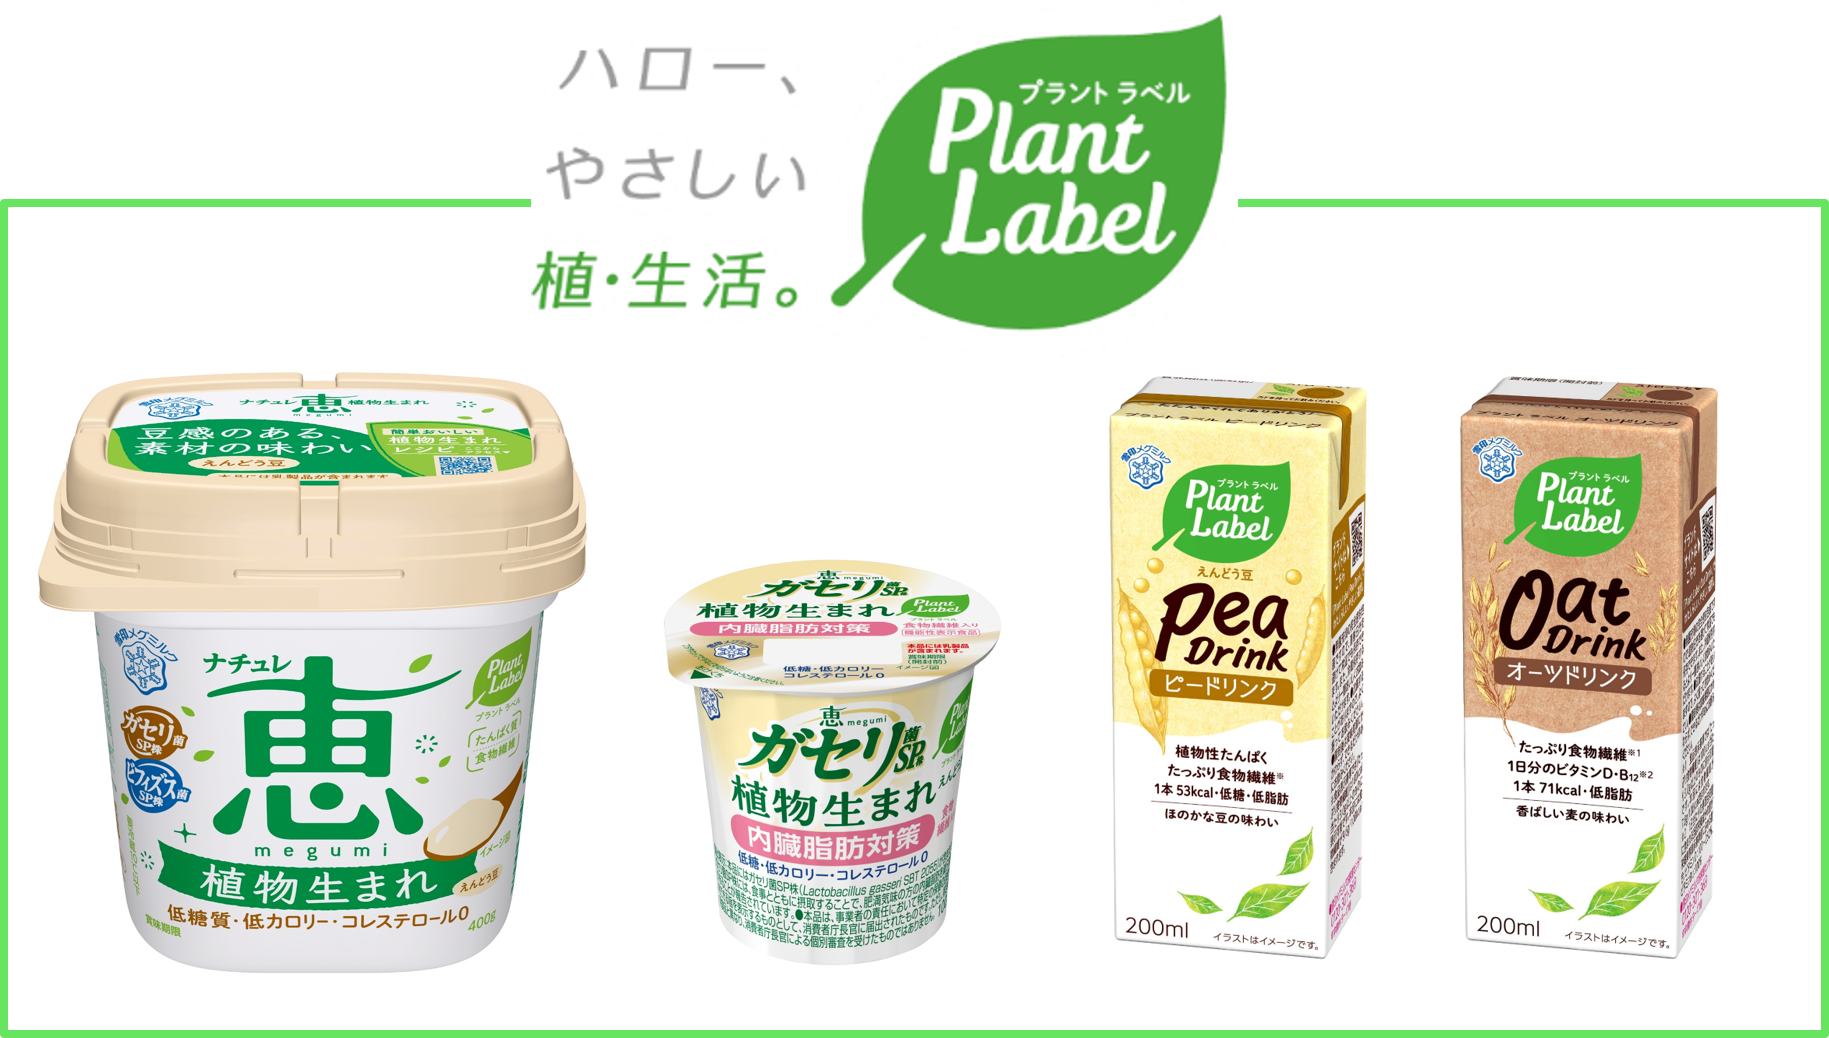 雪印メグミルクがプラントベースフード参入
新ブランド『Plant Label』を立ち上げ
新商品４品を発売！